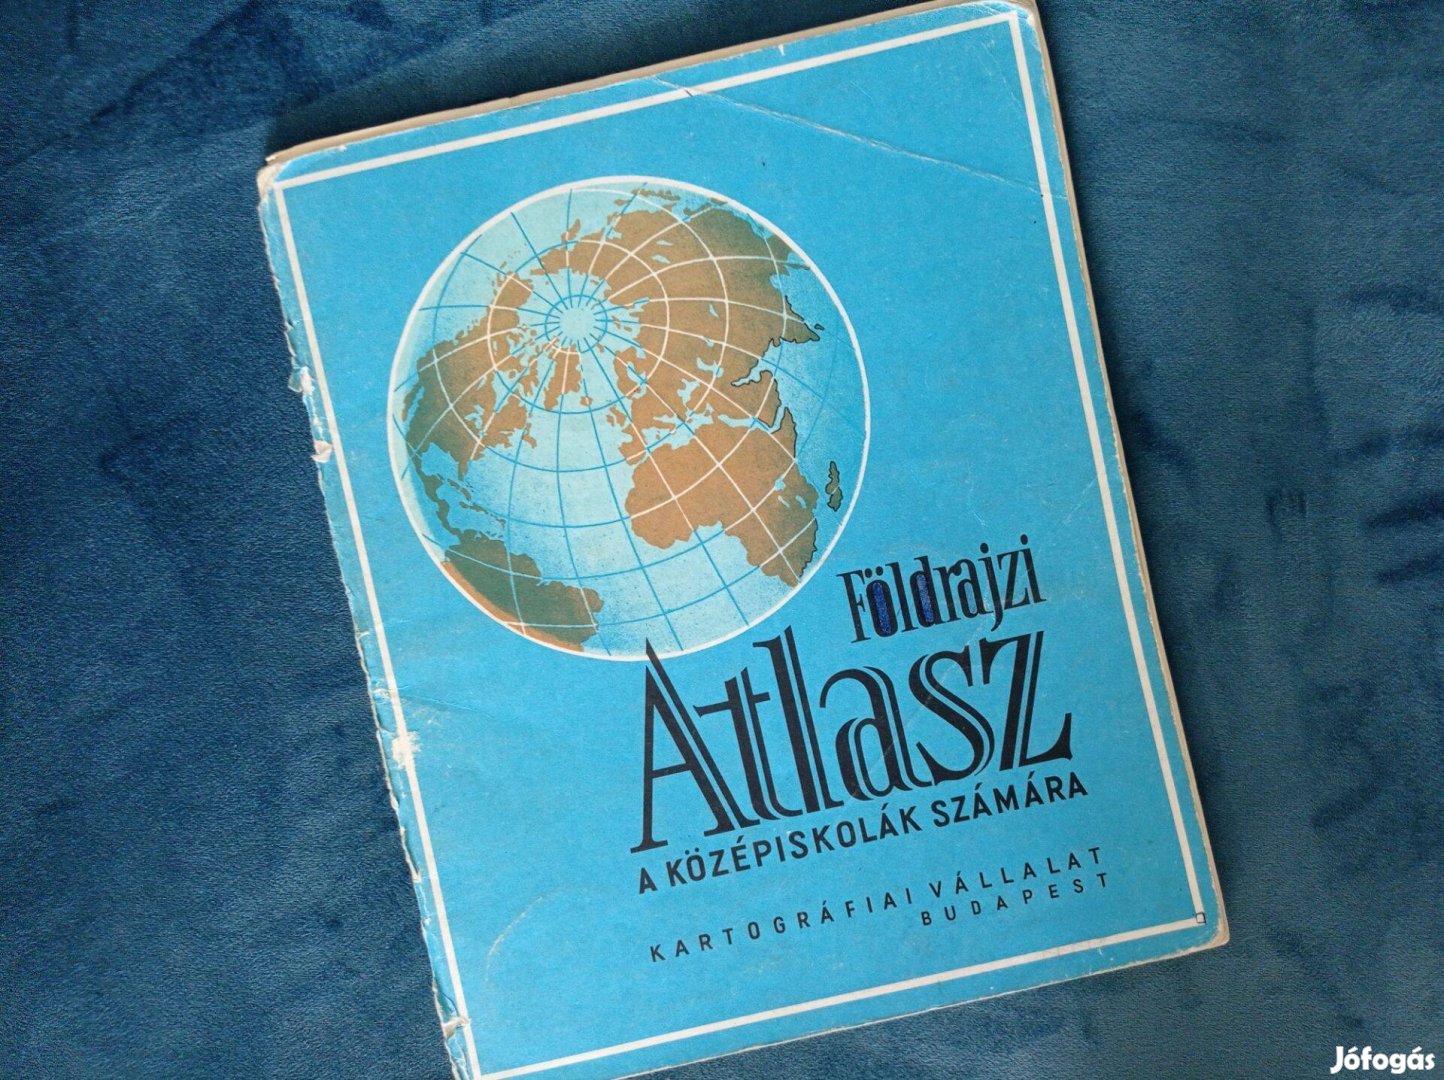 Földrajzi atlasz a középiskolák számára (Kartográfiai Vállalat, 1991)